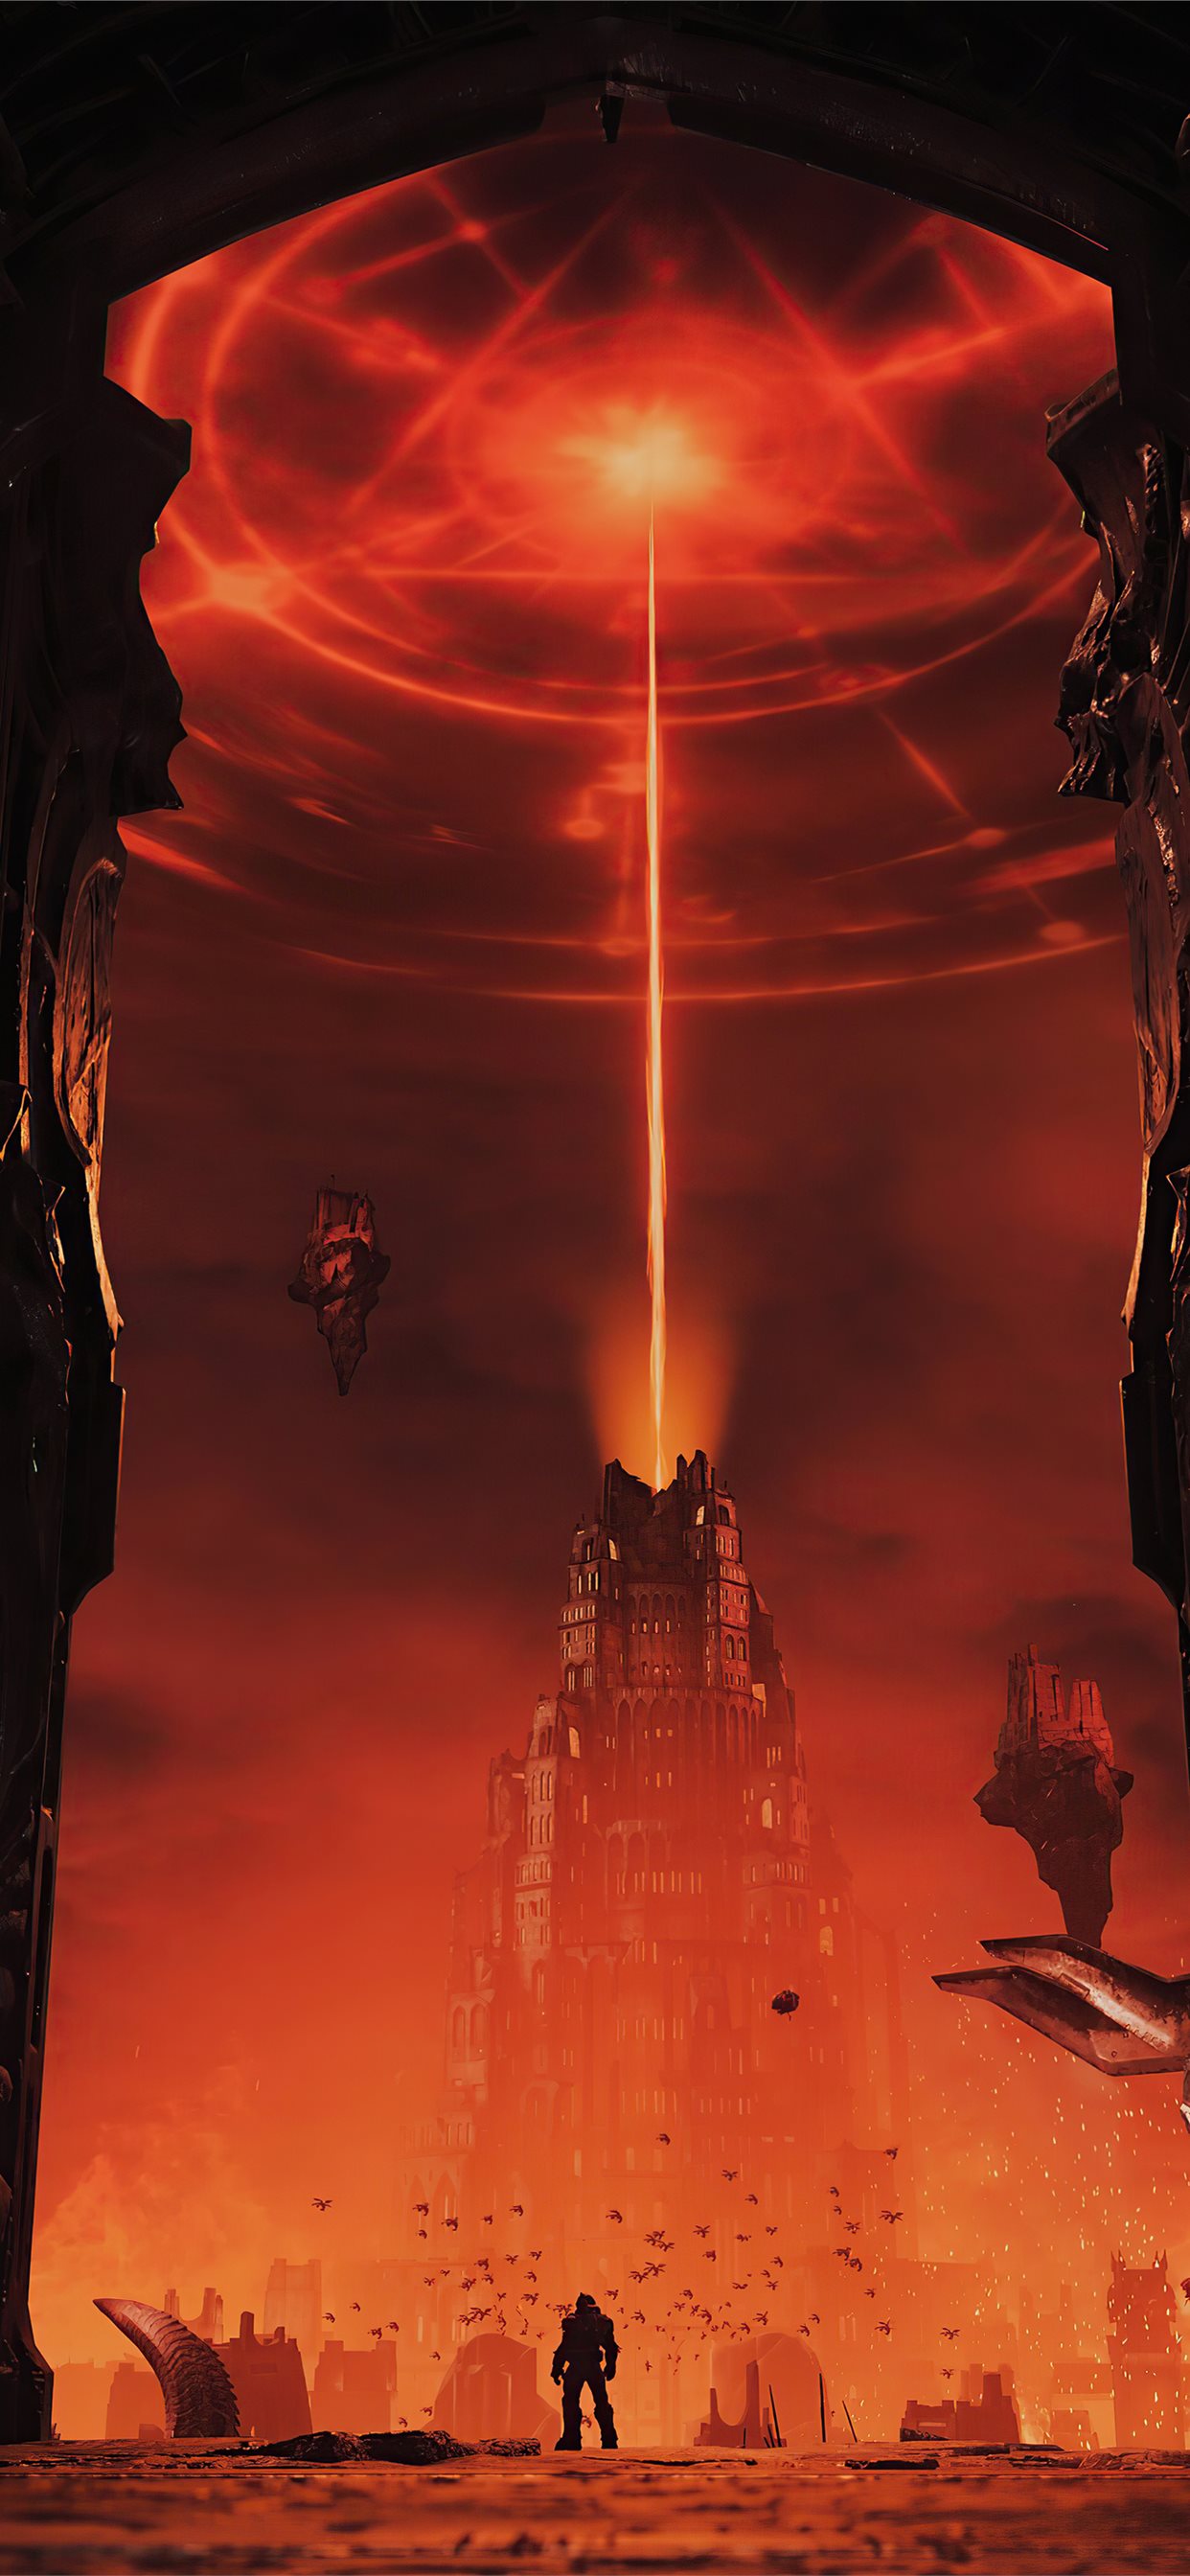 Doom Eternal – tên game đầy kịch tính và gay cấn đang chờ đón bạn khám phá. Những trận chiến đấu nảy lửa, những cảnh hành động đầy sức nặng sẽ khiến bạn không thể rời mắt khỏi màn hình. 